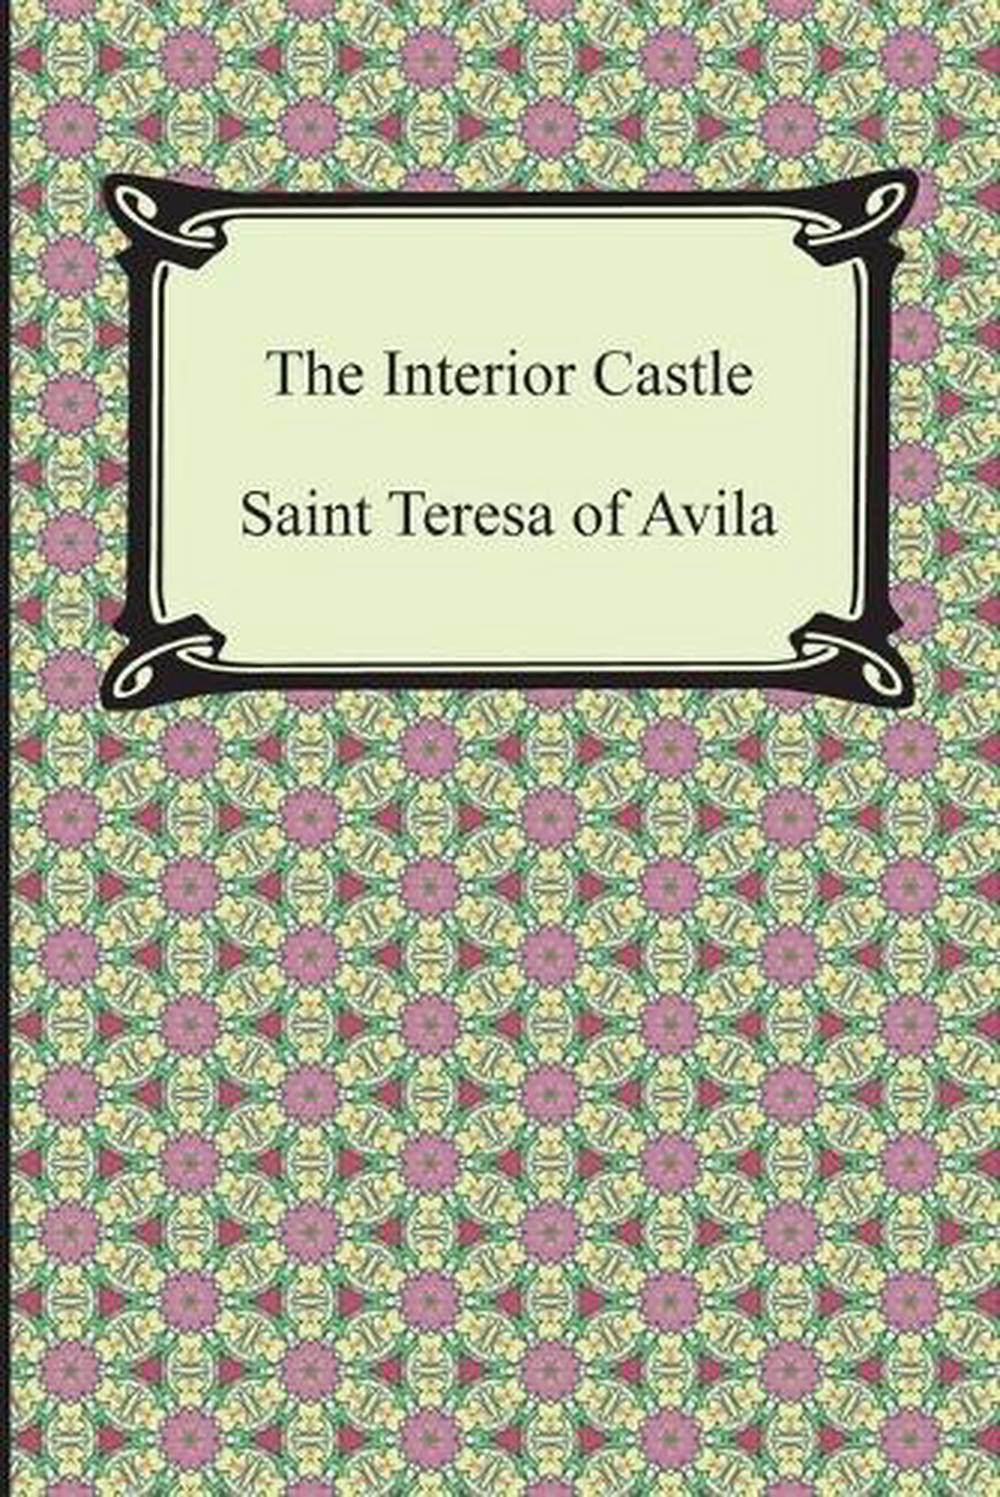 st teresa of avila interior castle